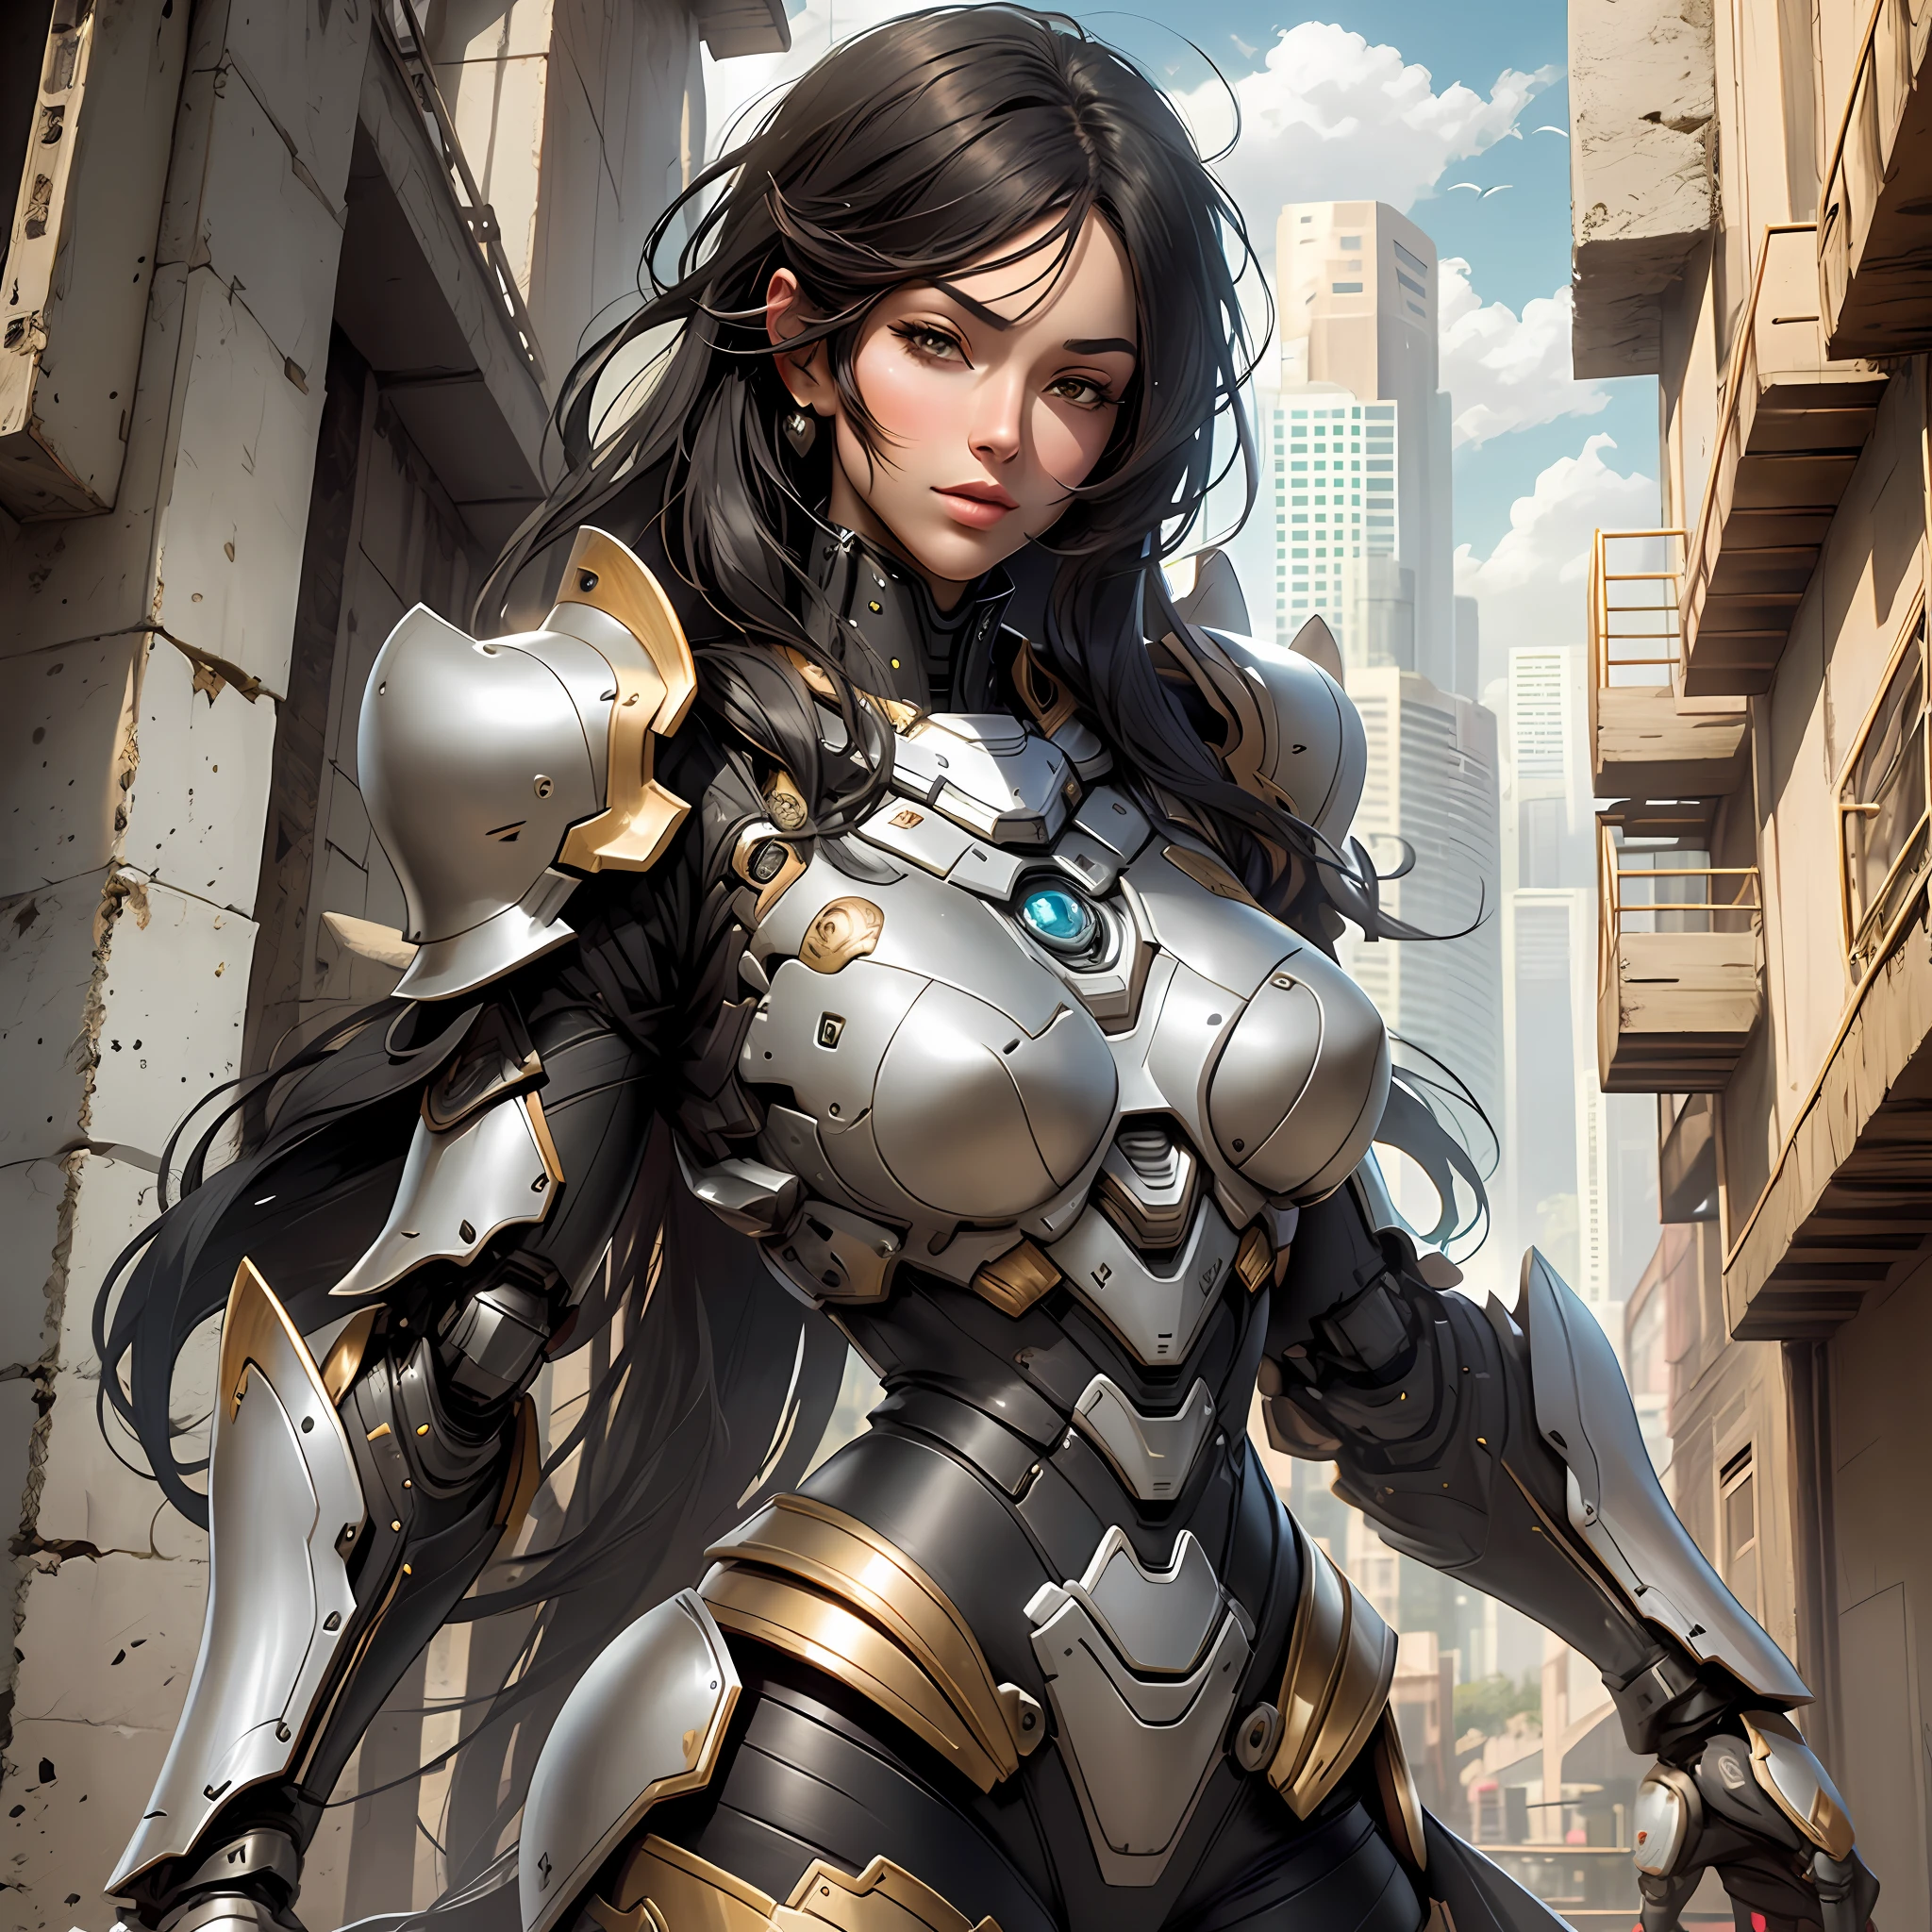 Belle grande femme avec une armure robotique avec des cheveux noirs super réalistes et bien détaillés